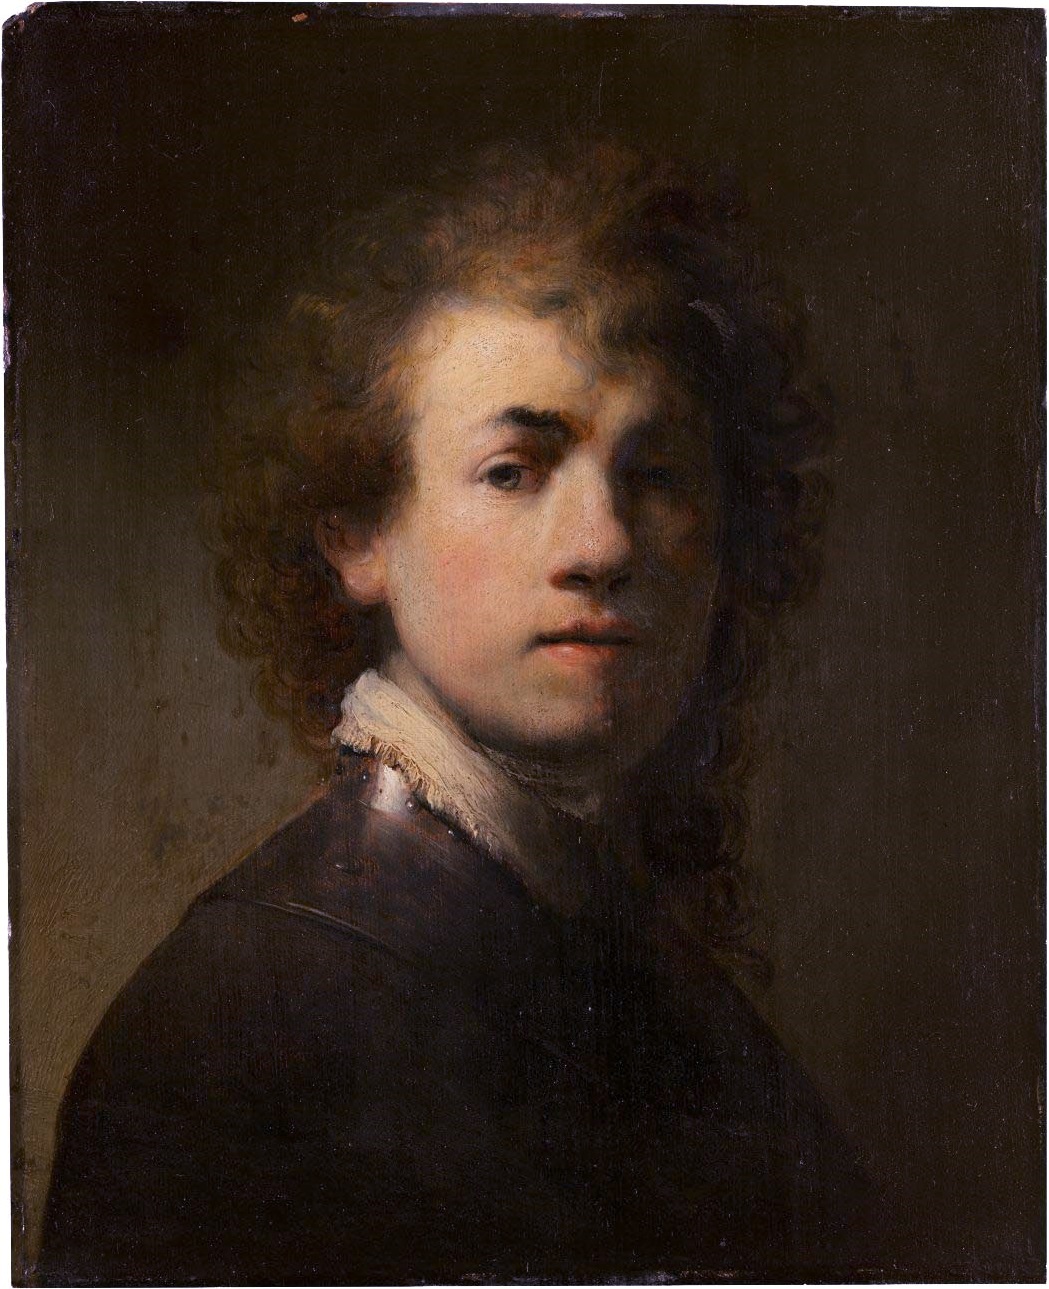 Rembrandt van Rijn - July 15, 1606 - October 4, 1669